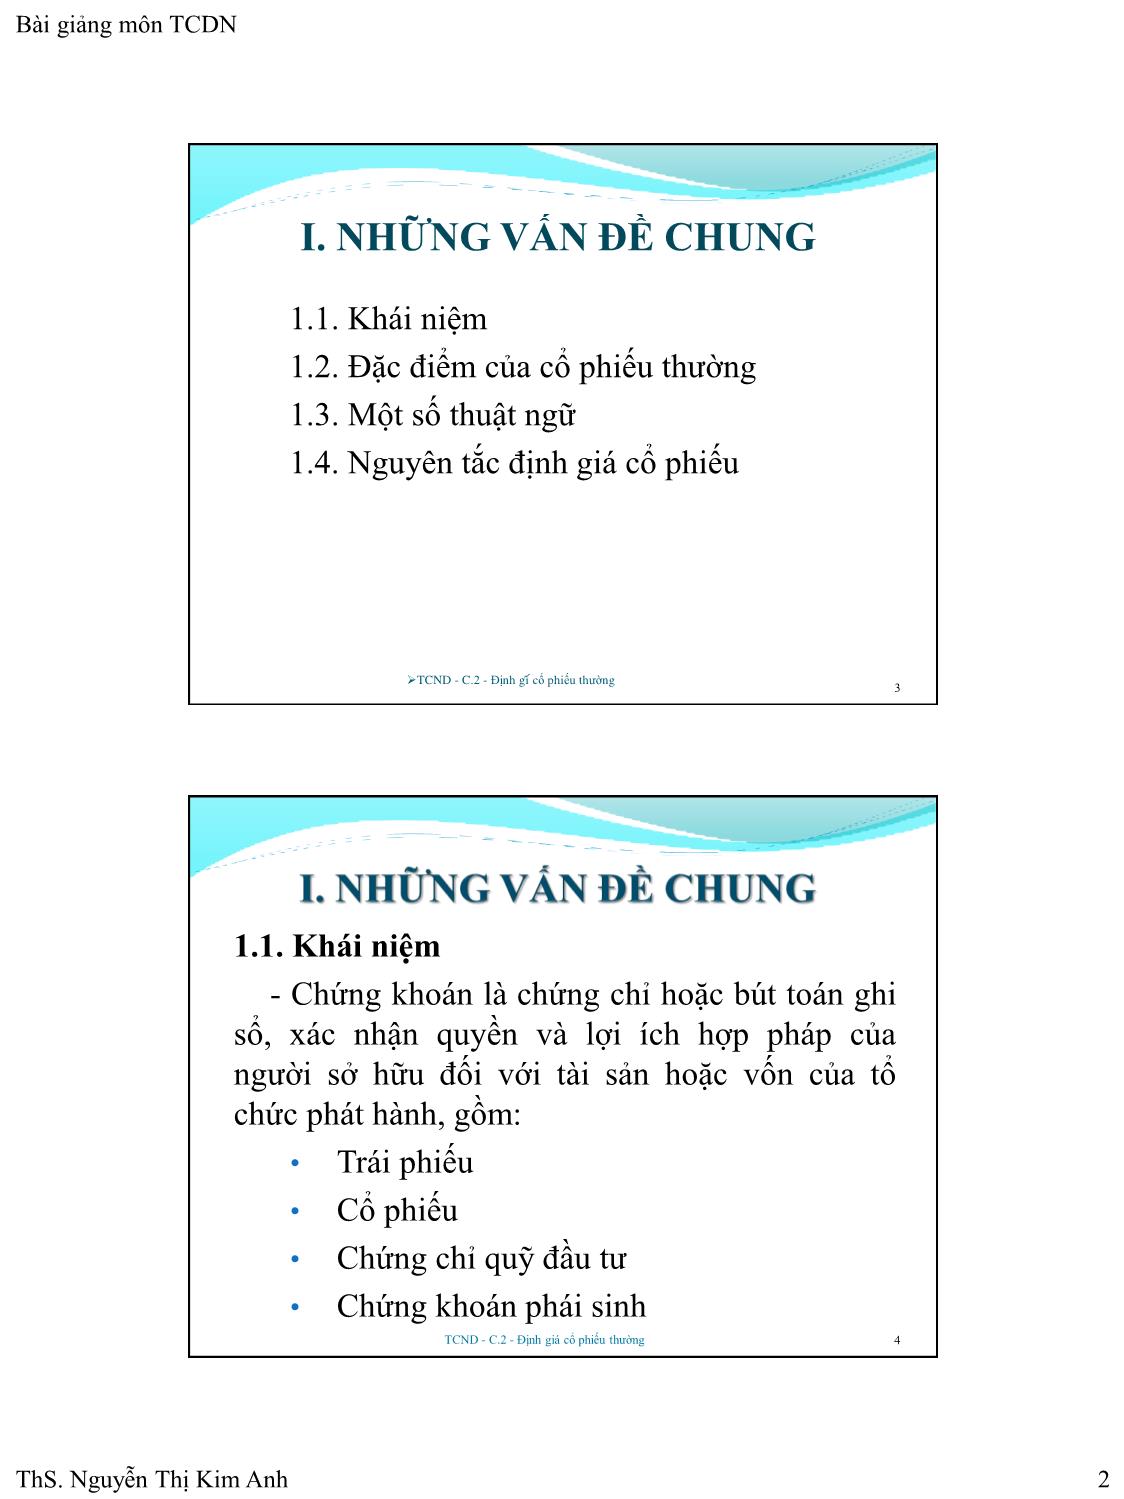 Bài giảng Tài chính doanh nghiệp - Chương 2: Định giá cổ phiếu thường - Nguyễn Thị Kim Anh trang 2